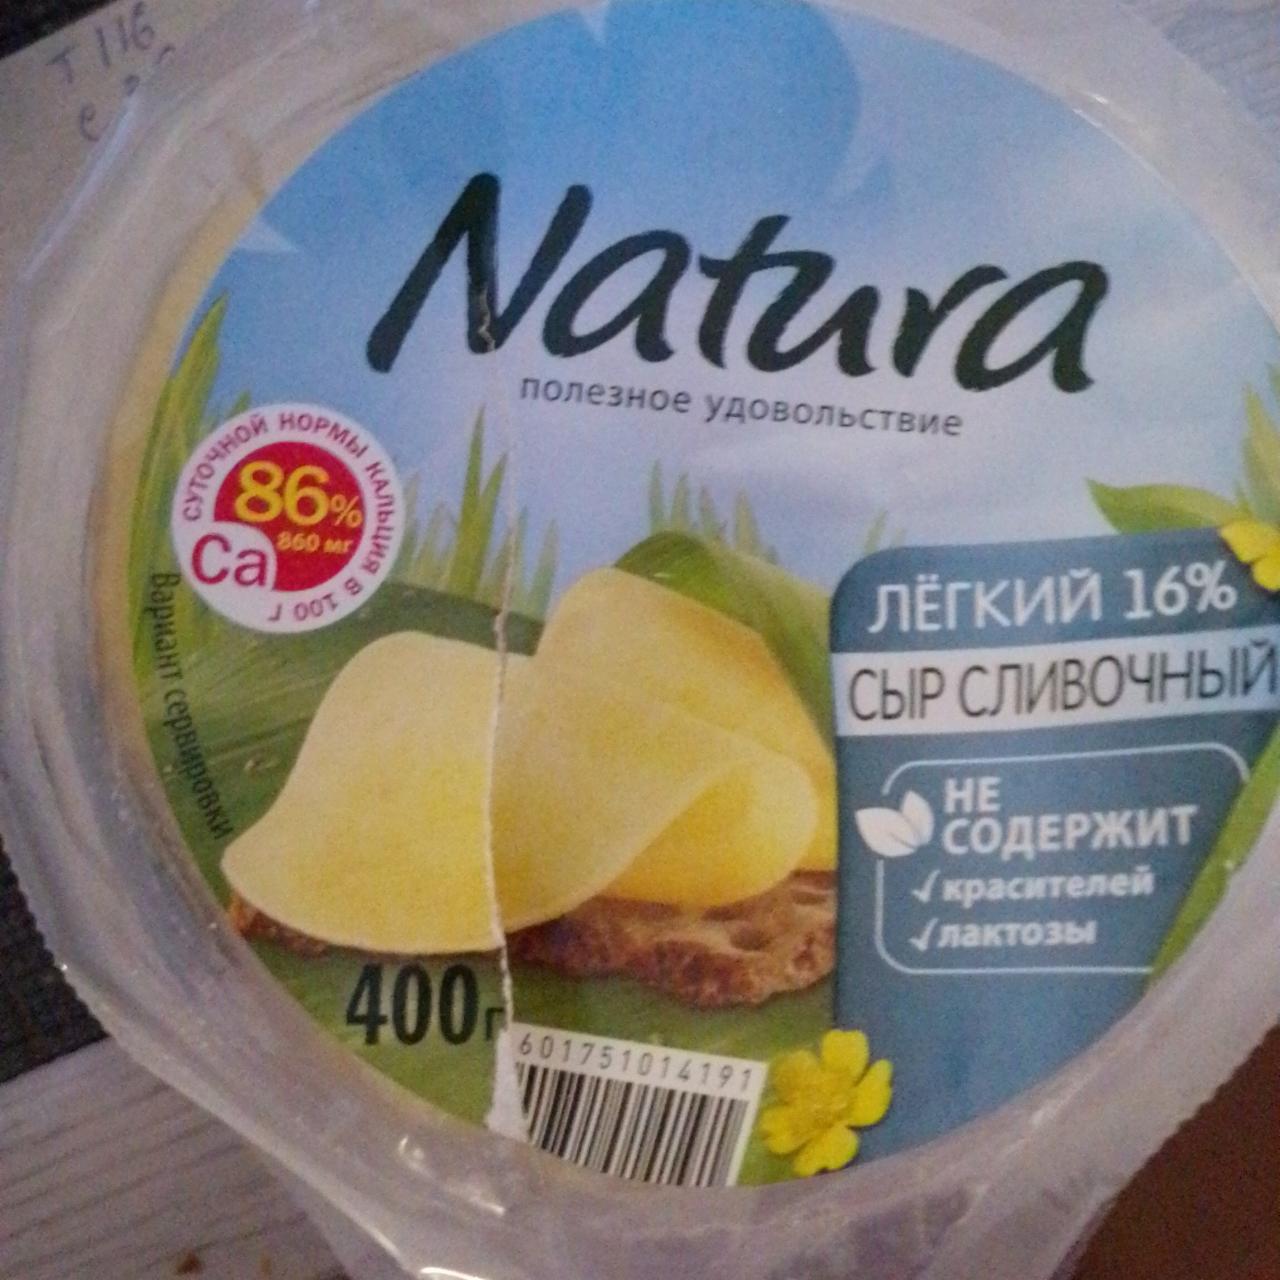 Фото - Сыр сливочный Лёгкий 16% в нарезке Natura Arla